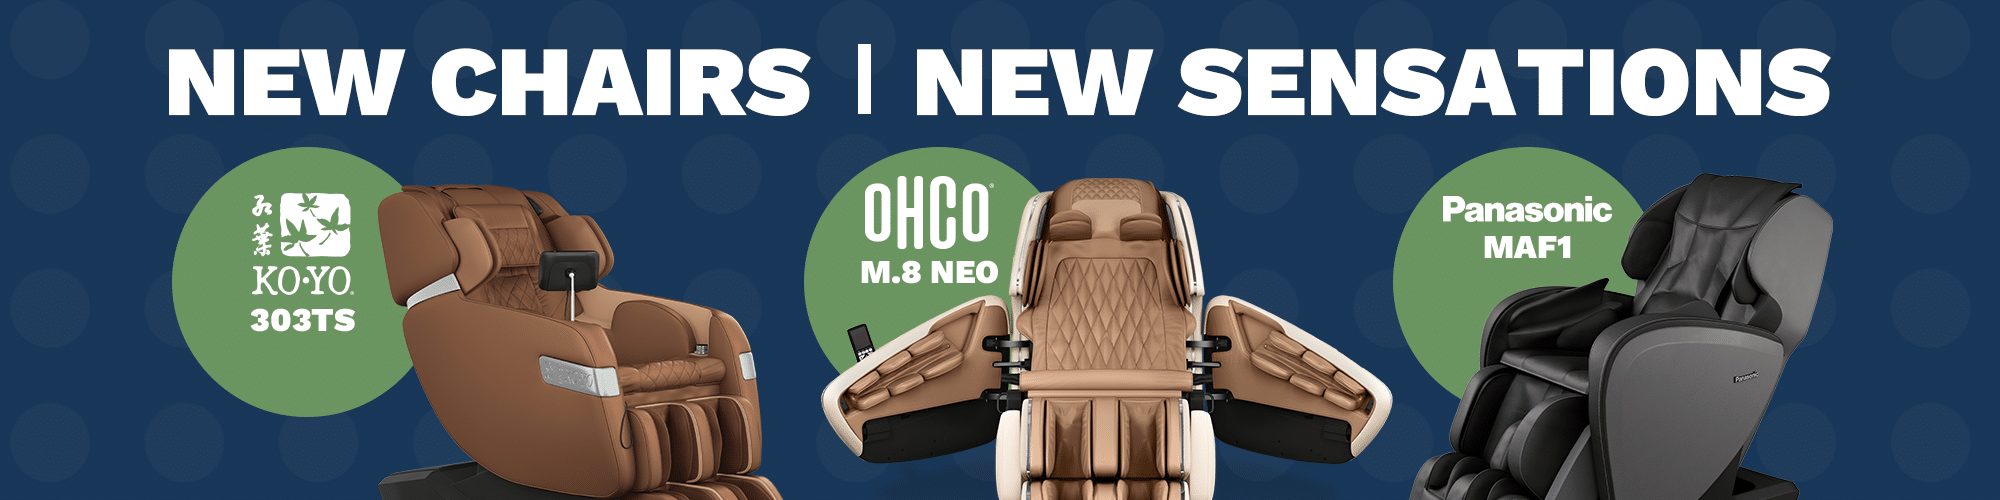 생활 가구의 새로운 마사지 의자 - koyo 303ts, ohco m.8 neo 및 panasonic maf1